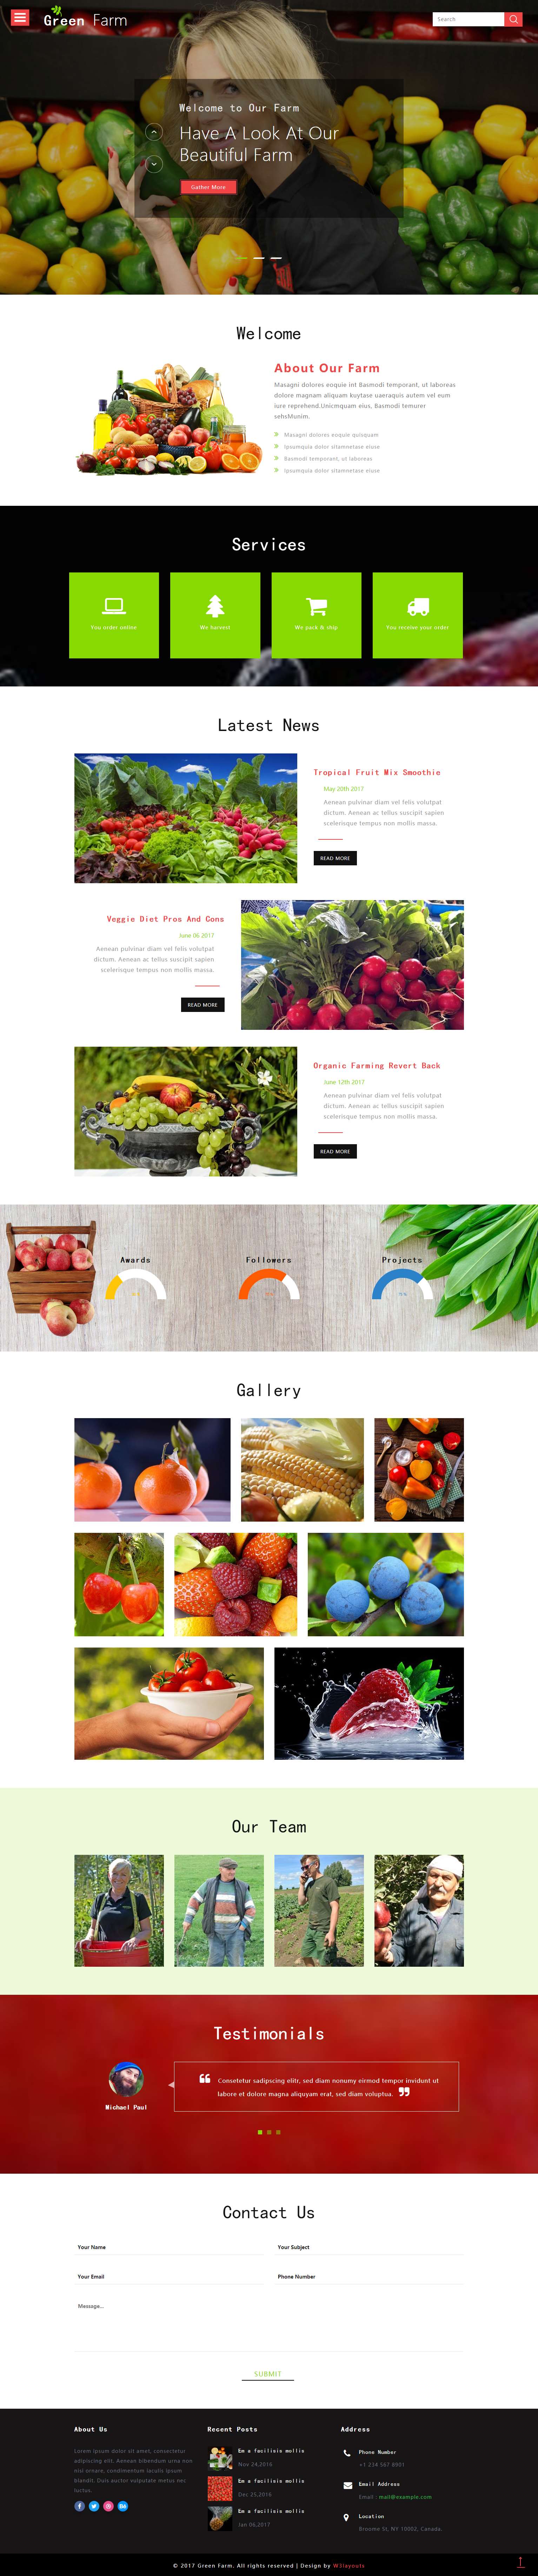 红色简洁风格的果蔬农场产品整站网站源码下载